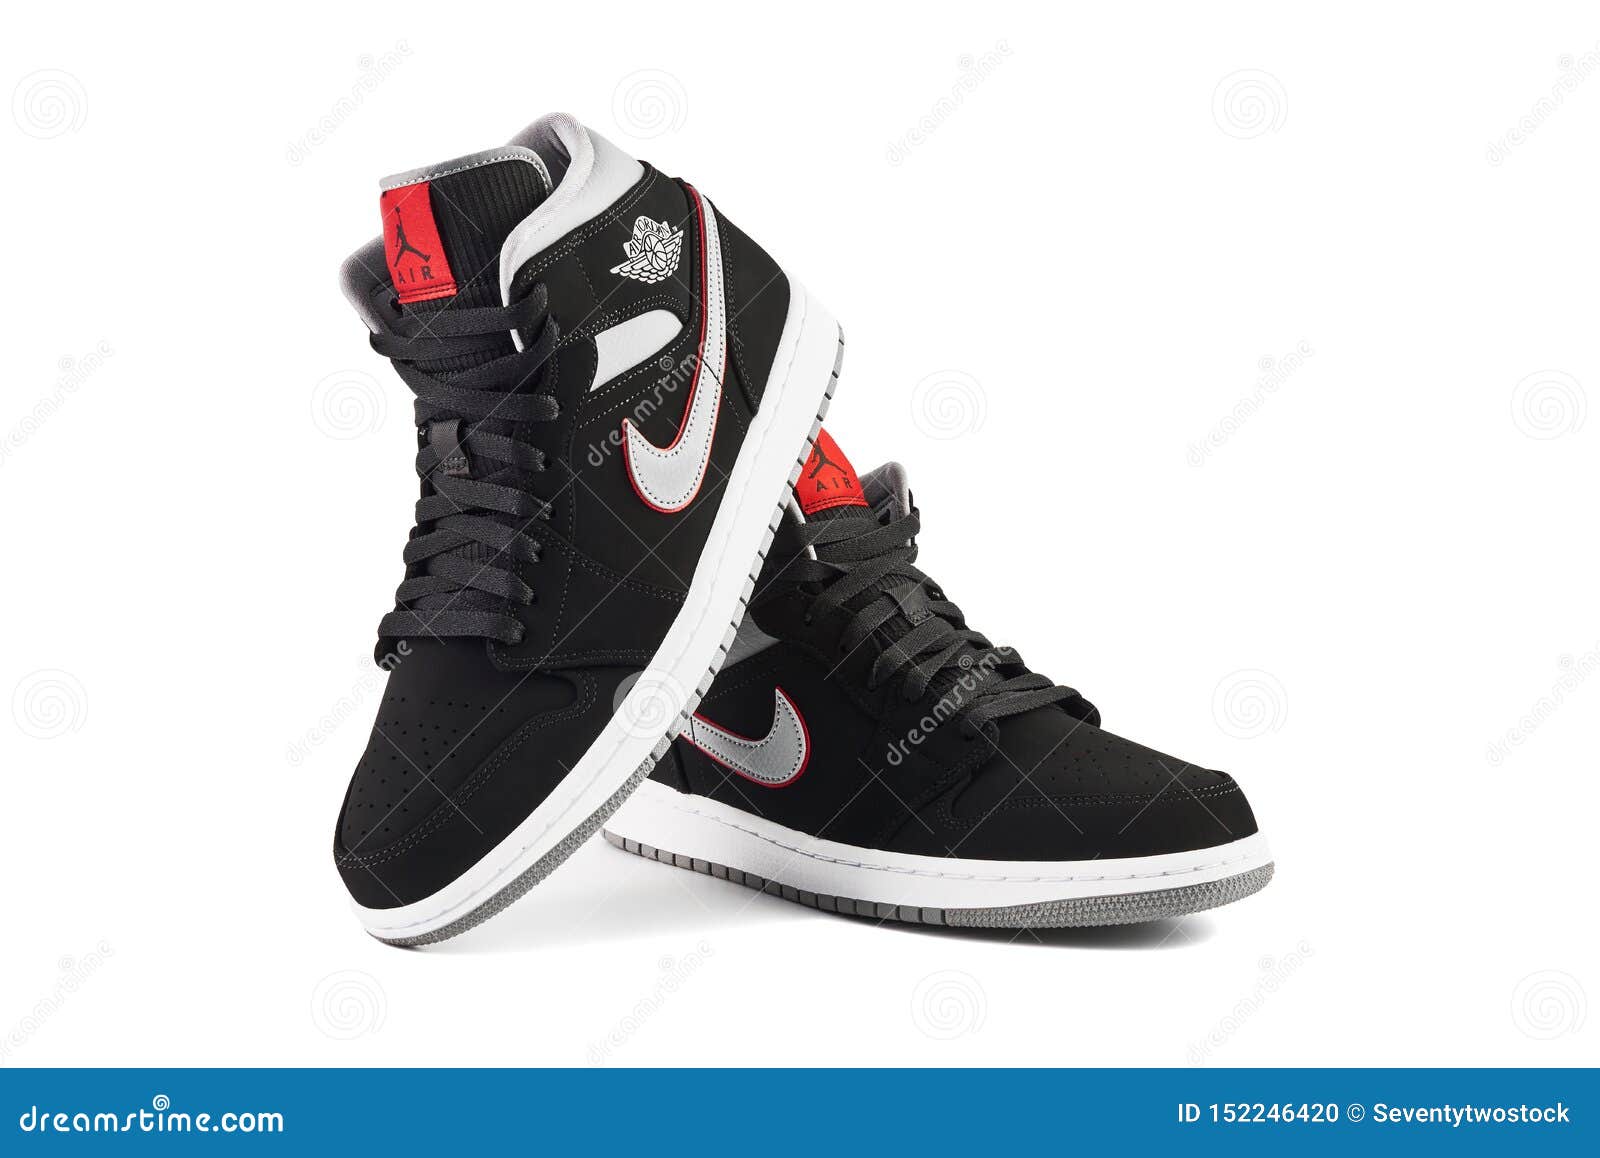 nike air jordan 1 mid sneakers in black